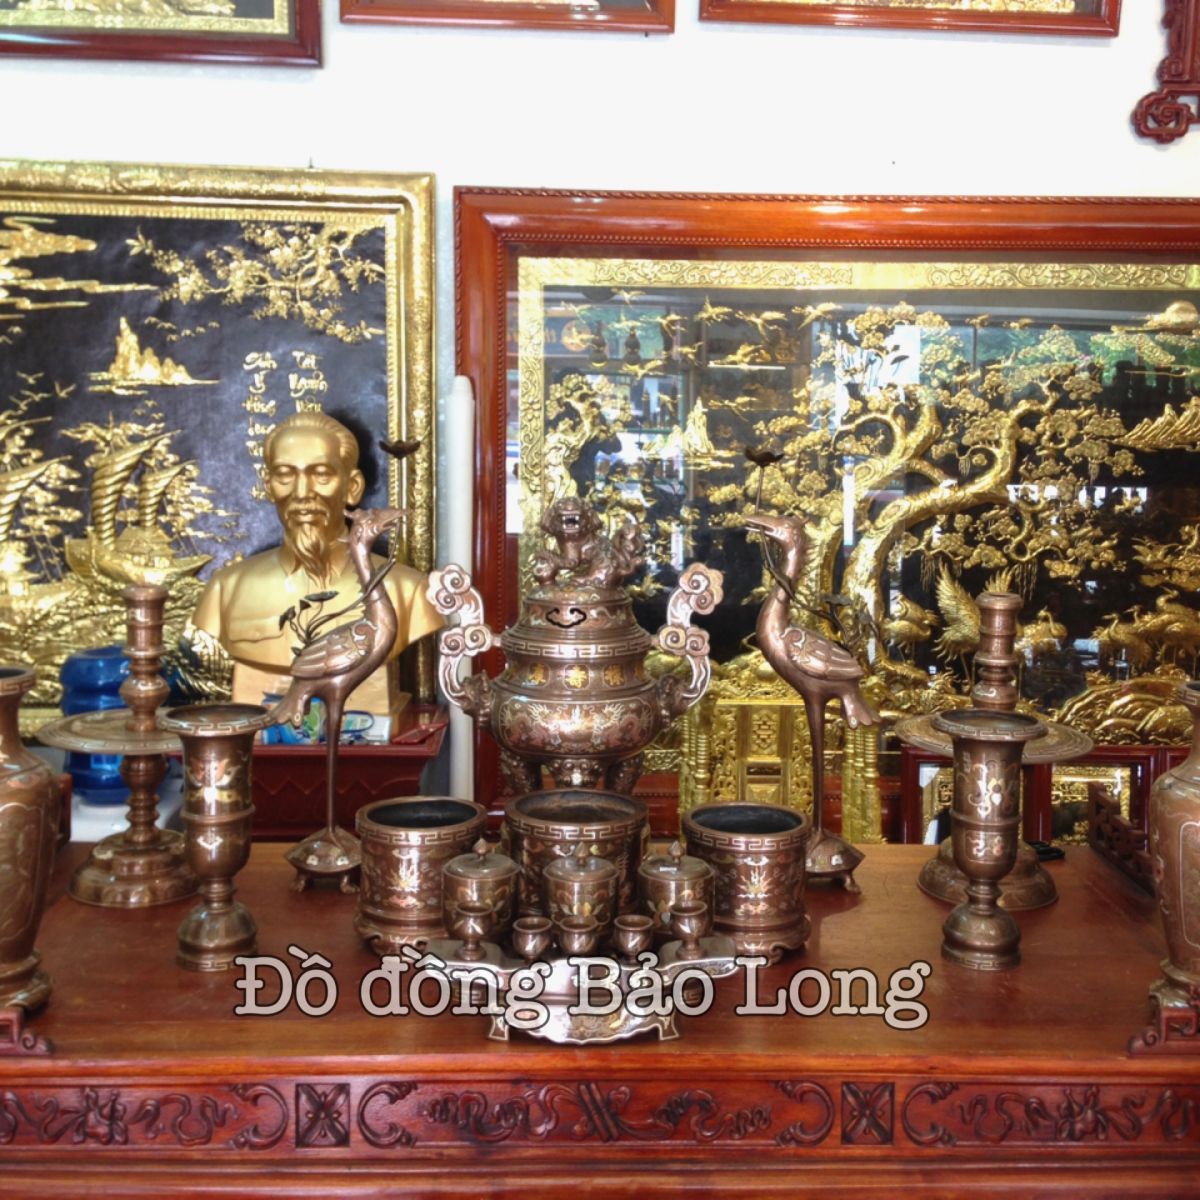 Cửa hàng, nơi bán lư đồng, đồ thờ phụng tại Sài Gòn TP Hồ Chí Minh